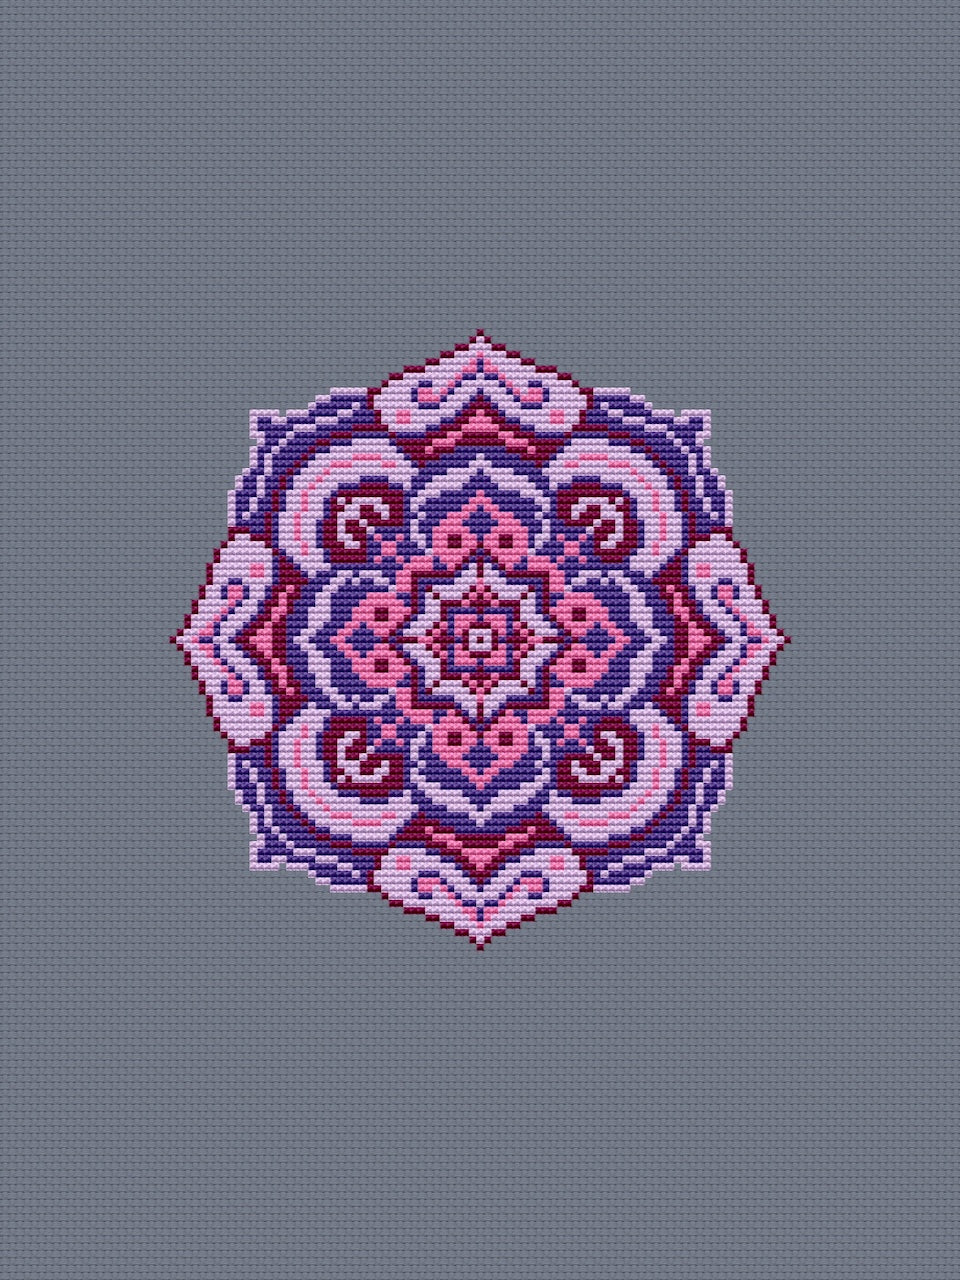 lilac mandala cross stitch pattern